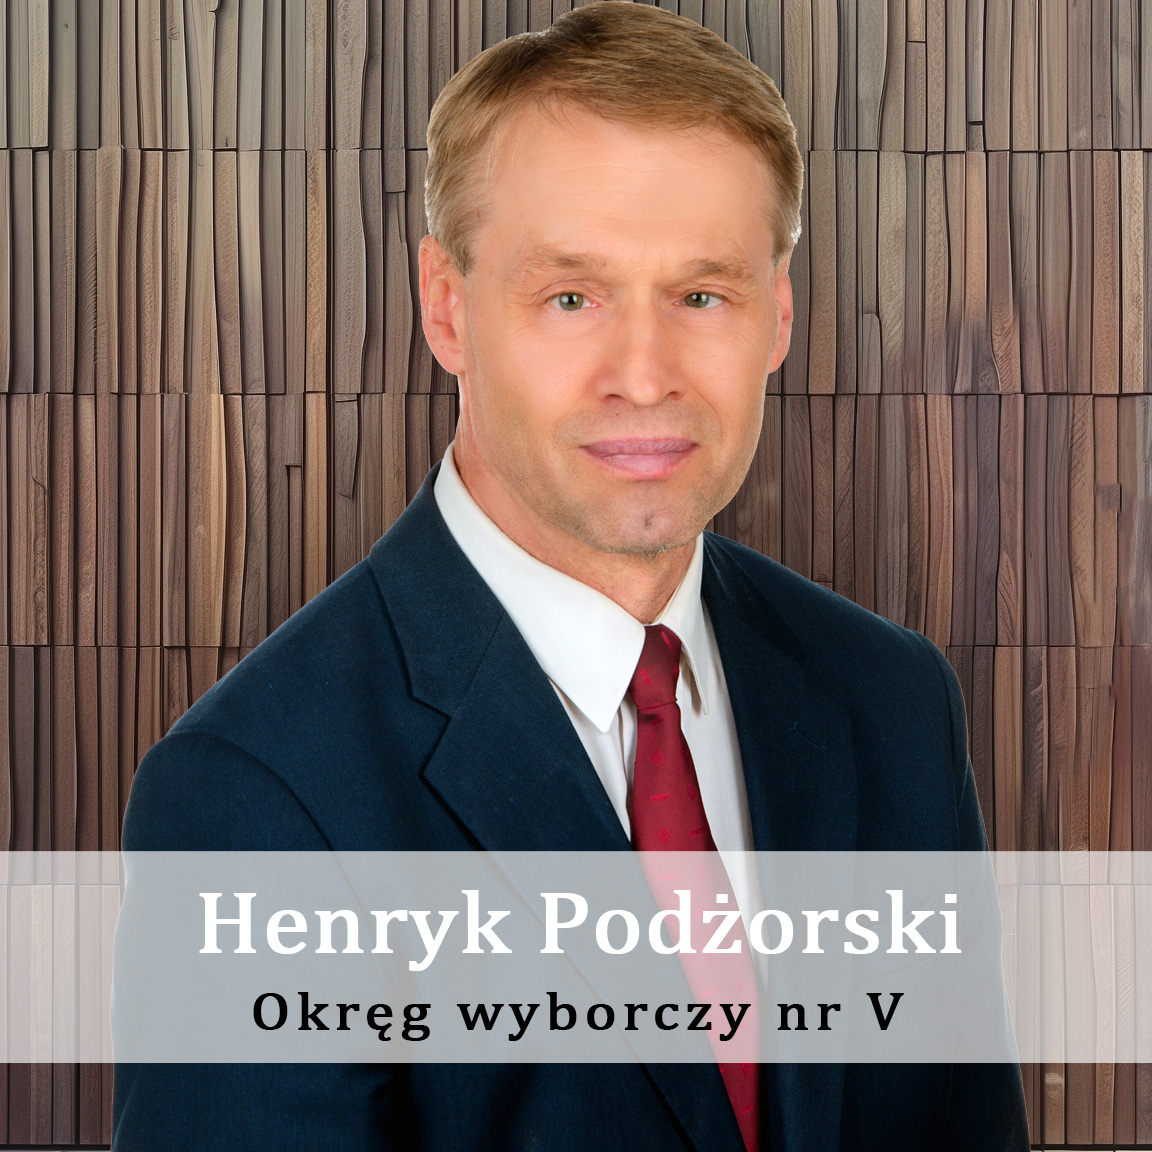 Henryk_Podżorski_-Okręg-wyporczy-nr--Radny-Miasto-Wisła